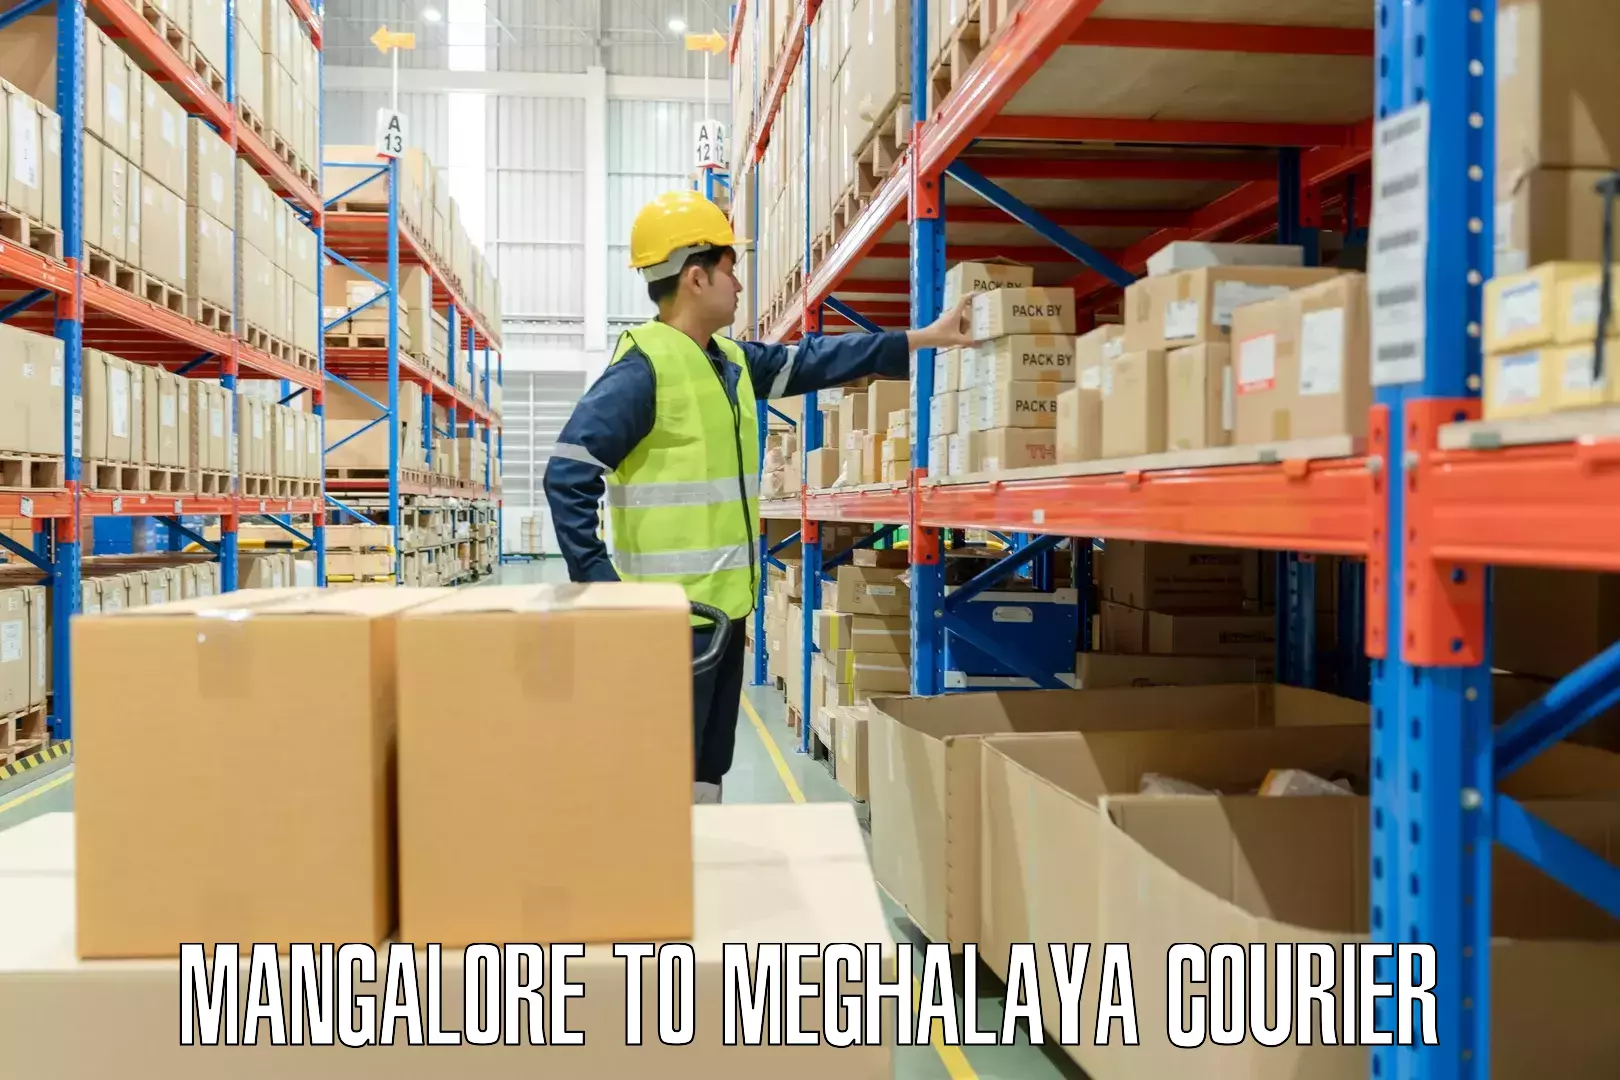 Overnight luggage courier Mangalore to Meghalaya